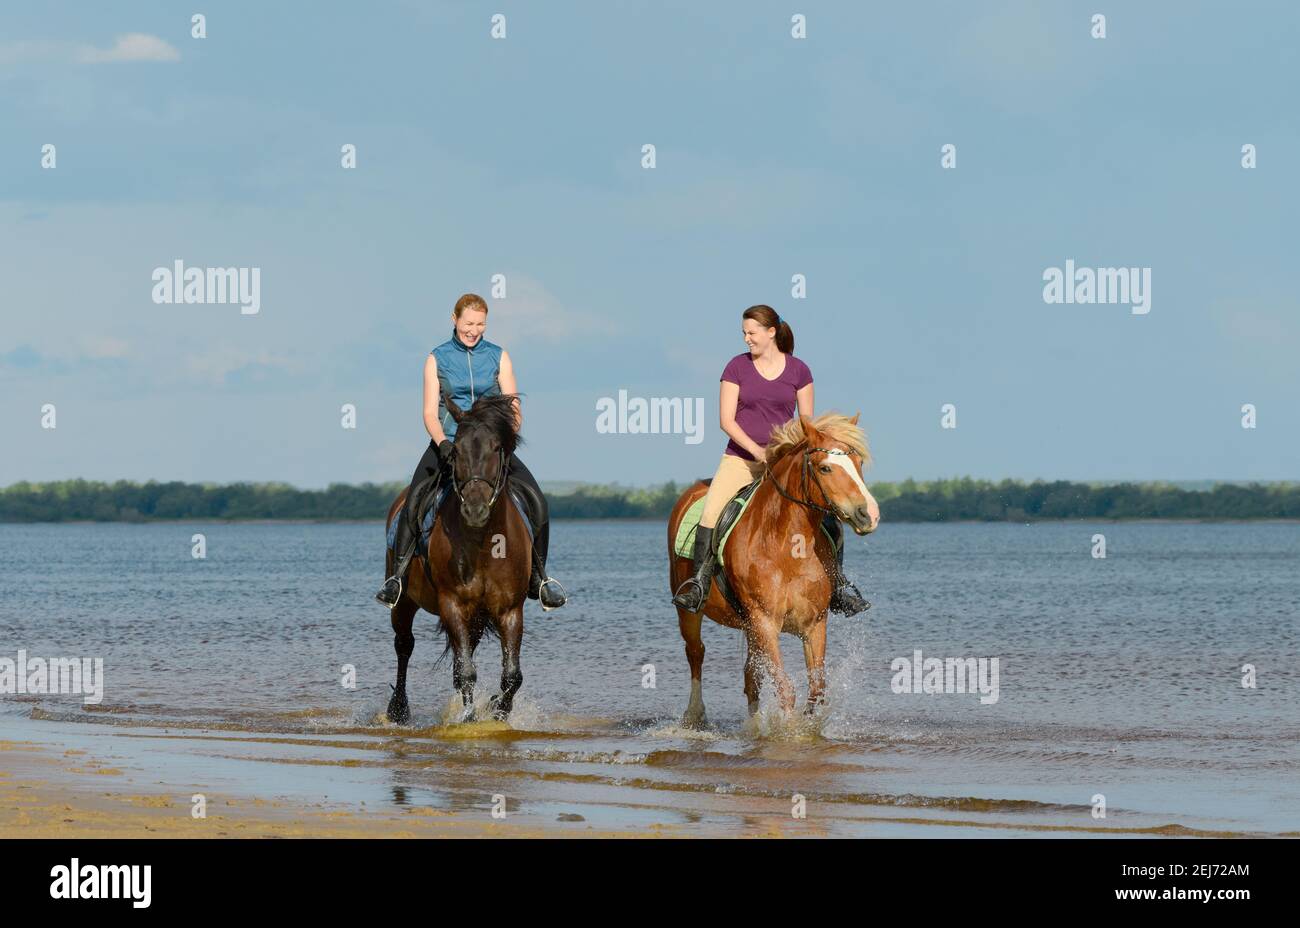 Deux femmes sont à cheval sur l'eau. Deux motards riant sont en plein air. Banque D'Images